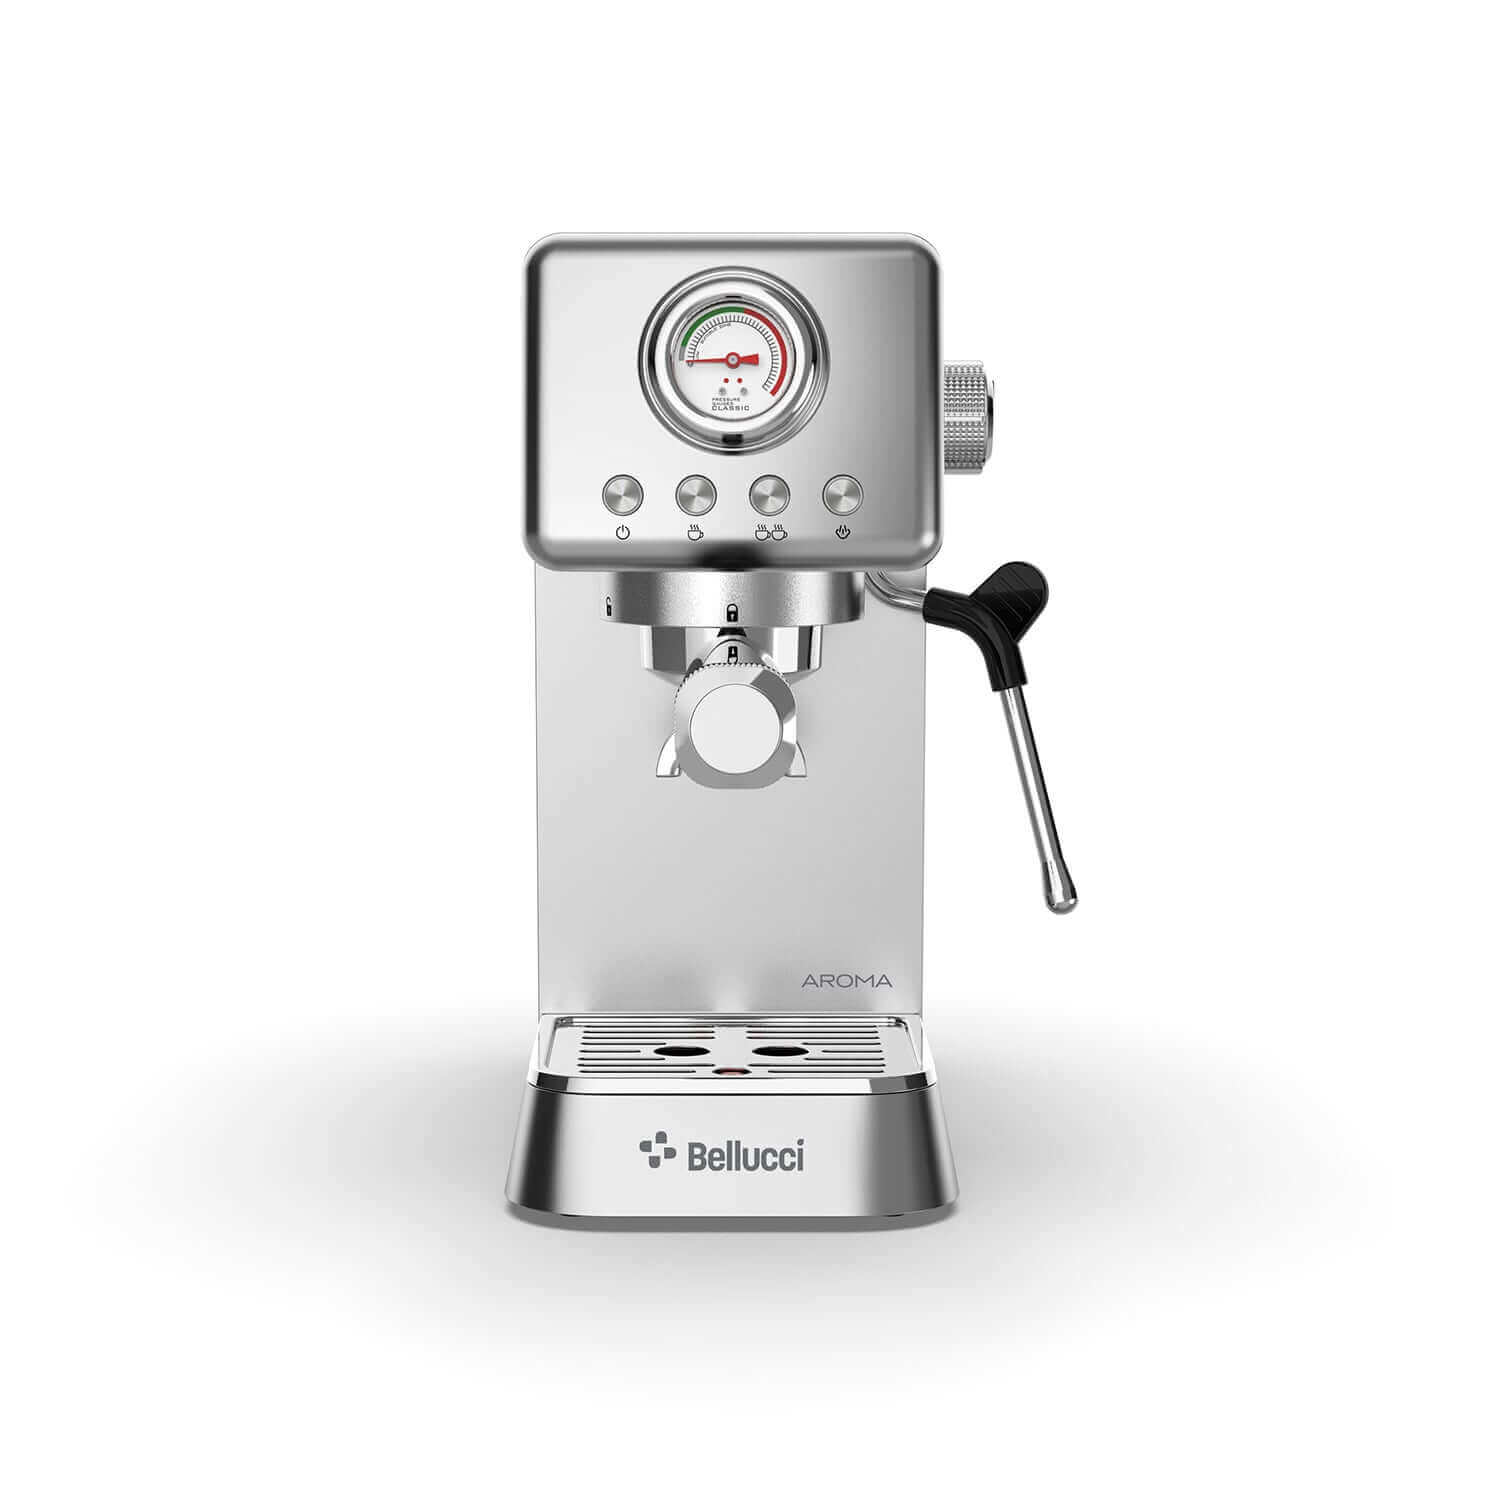 Bellucci espresso machine - Aroma